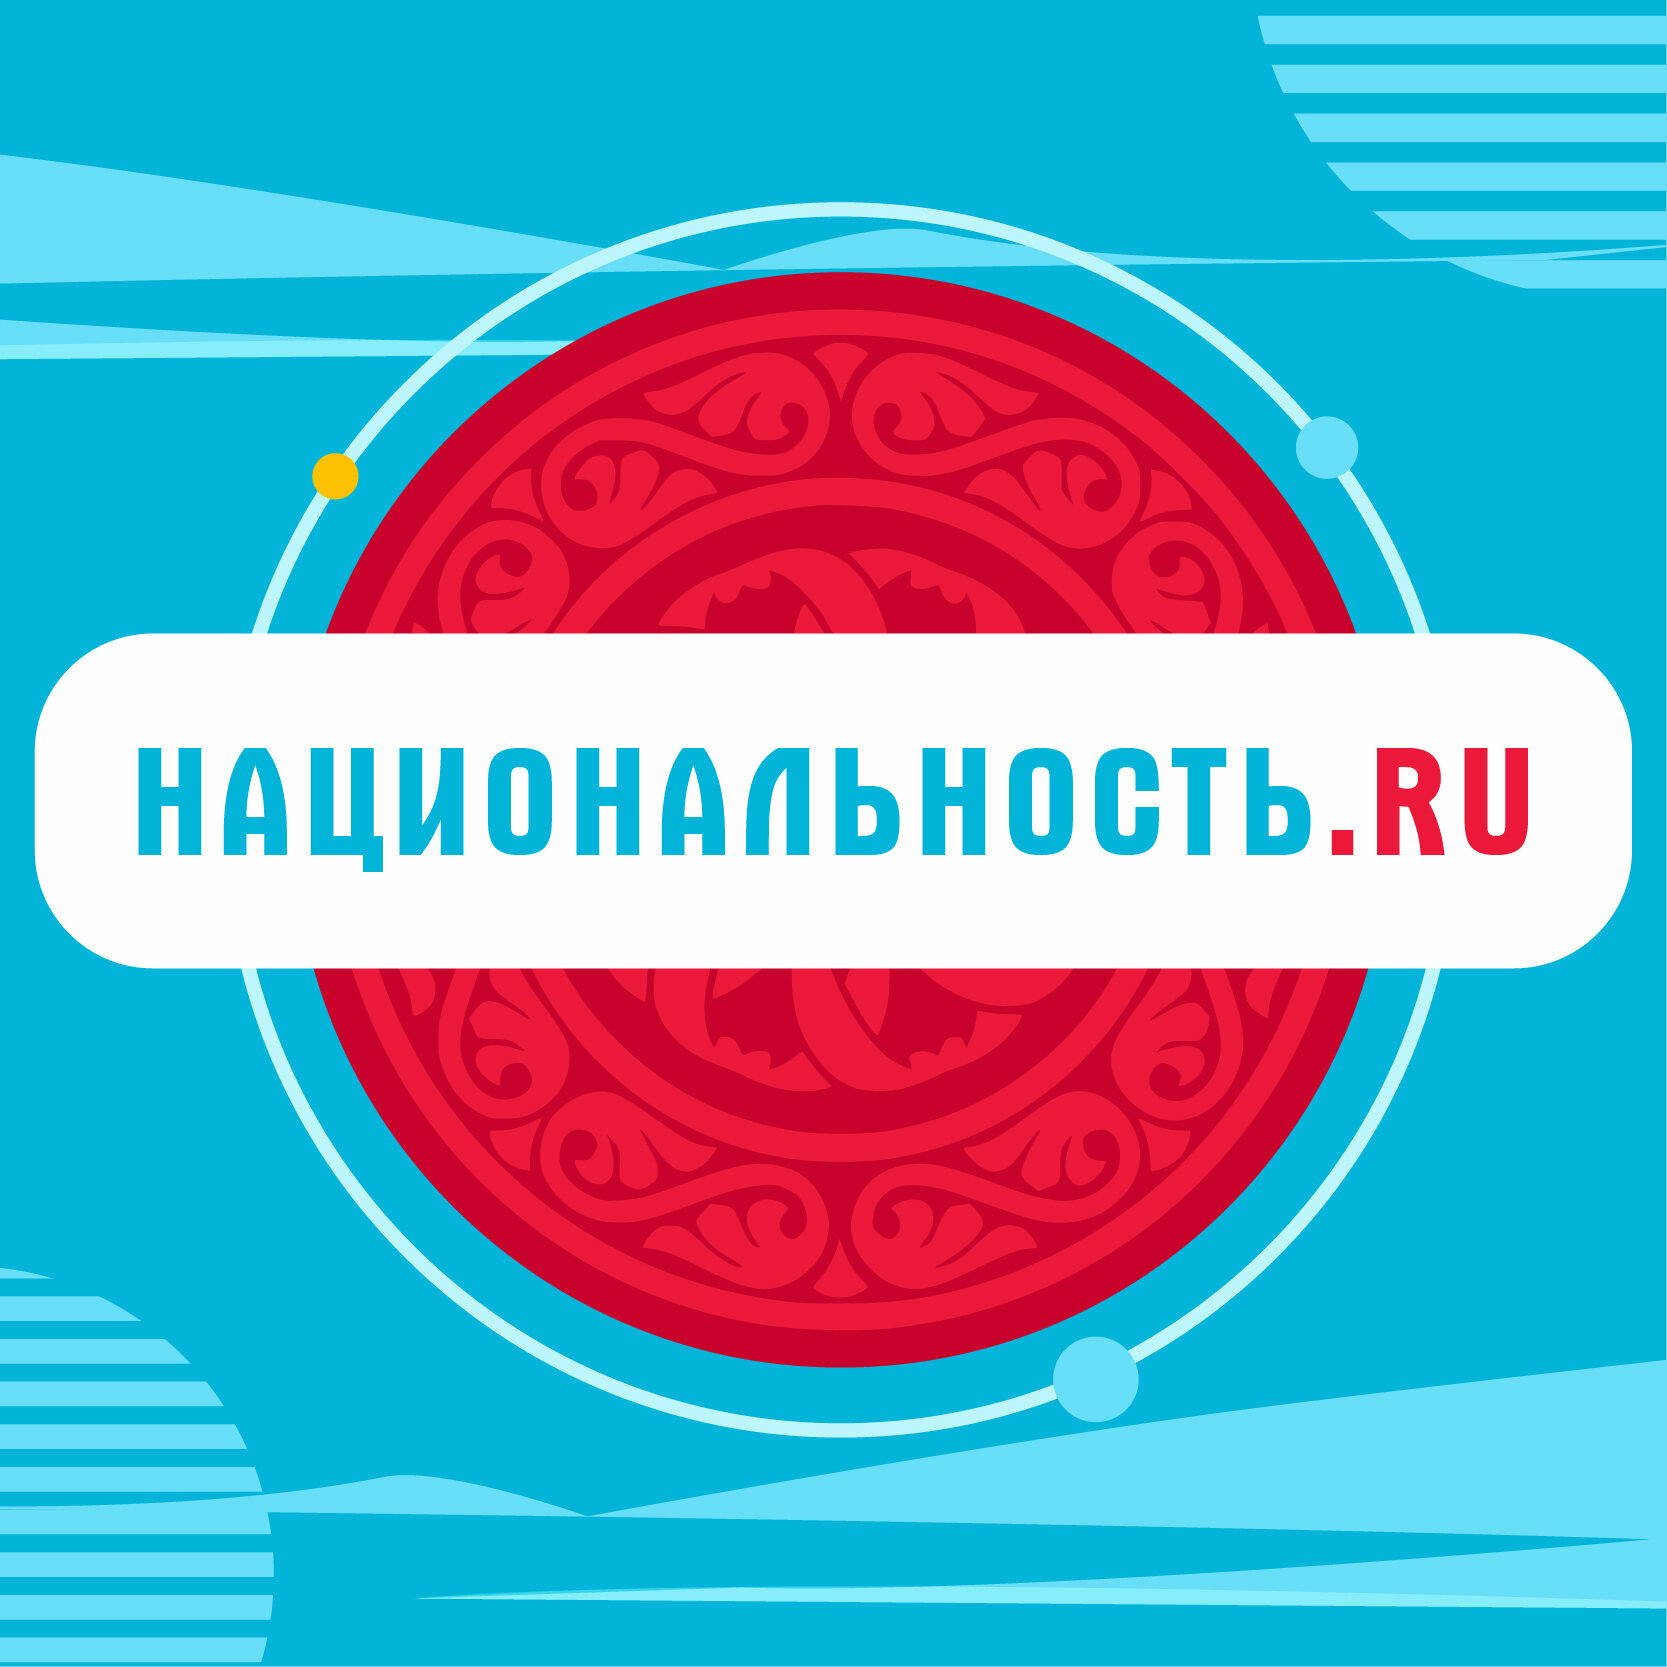 Новое тревел-шоу «Нацинальность.ru» поможет жителям Башкортостана лучше узнать друг друга